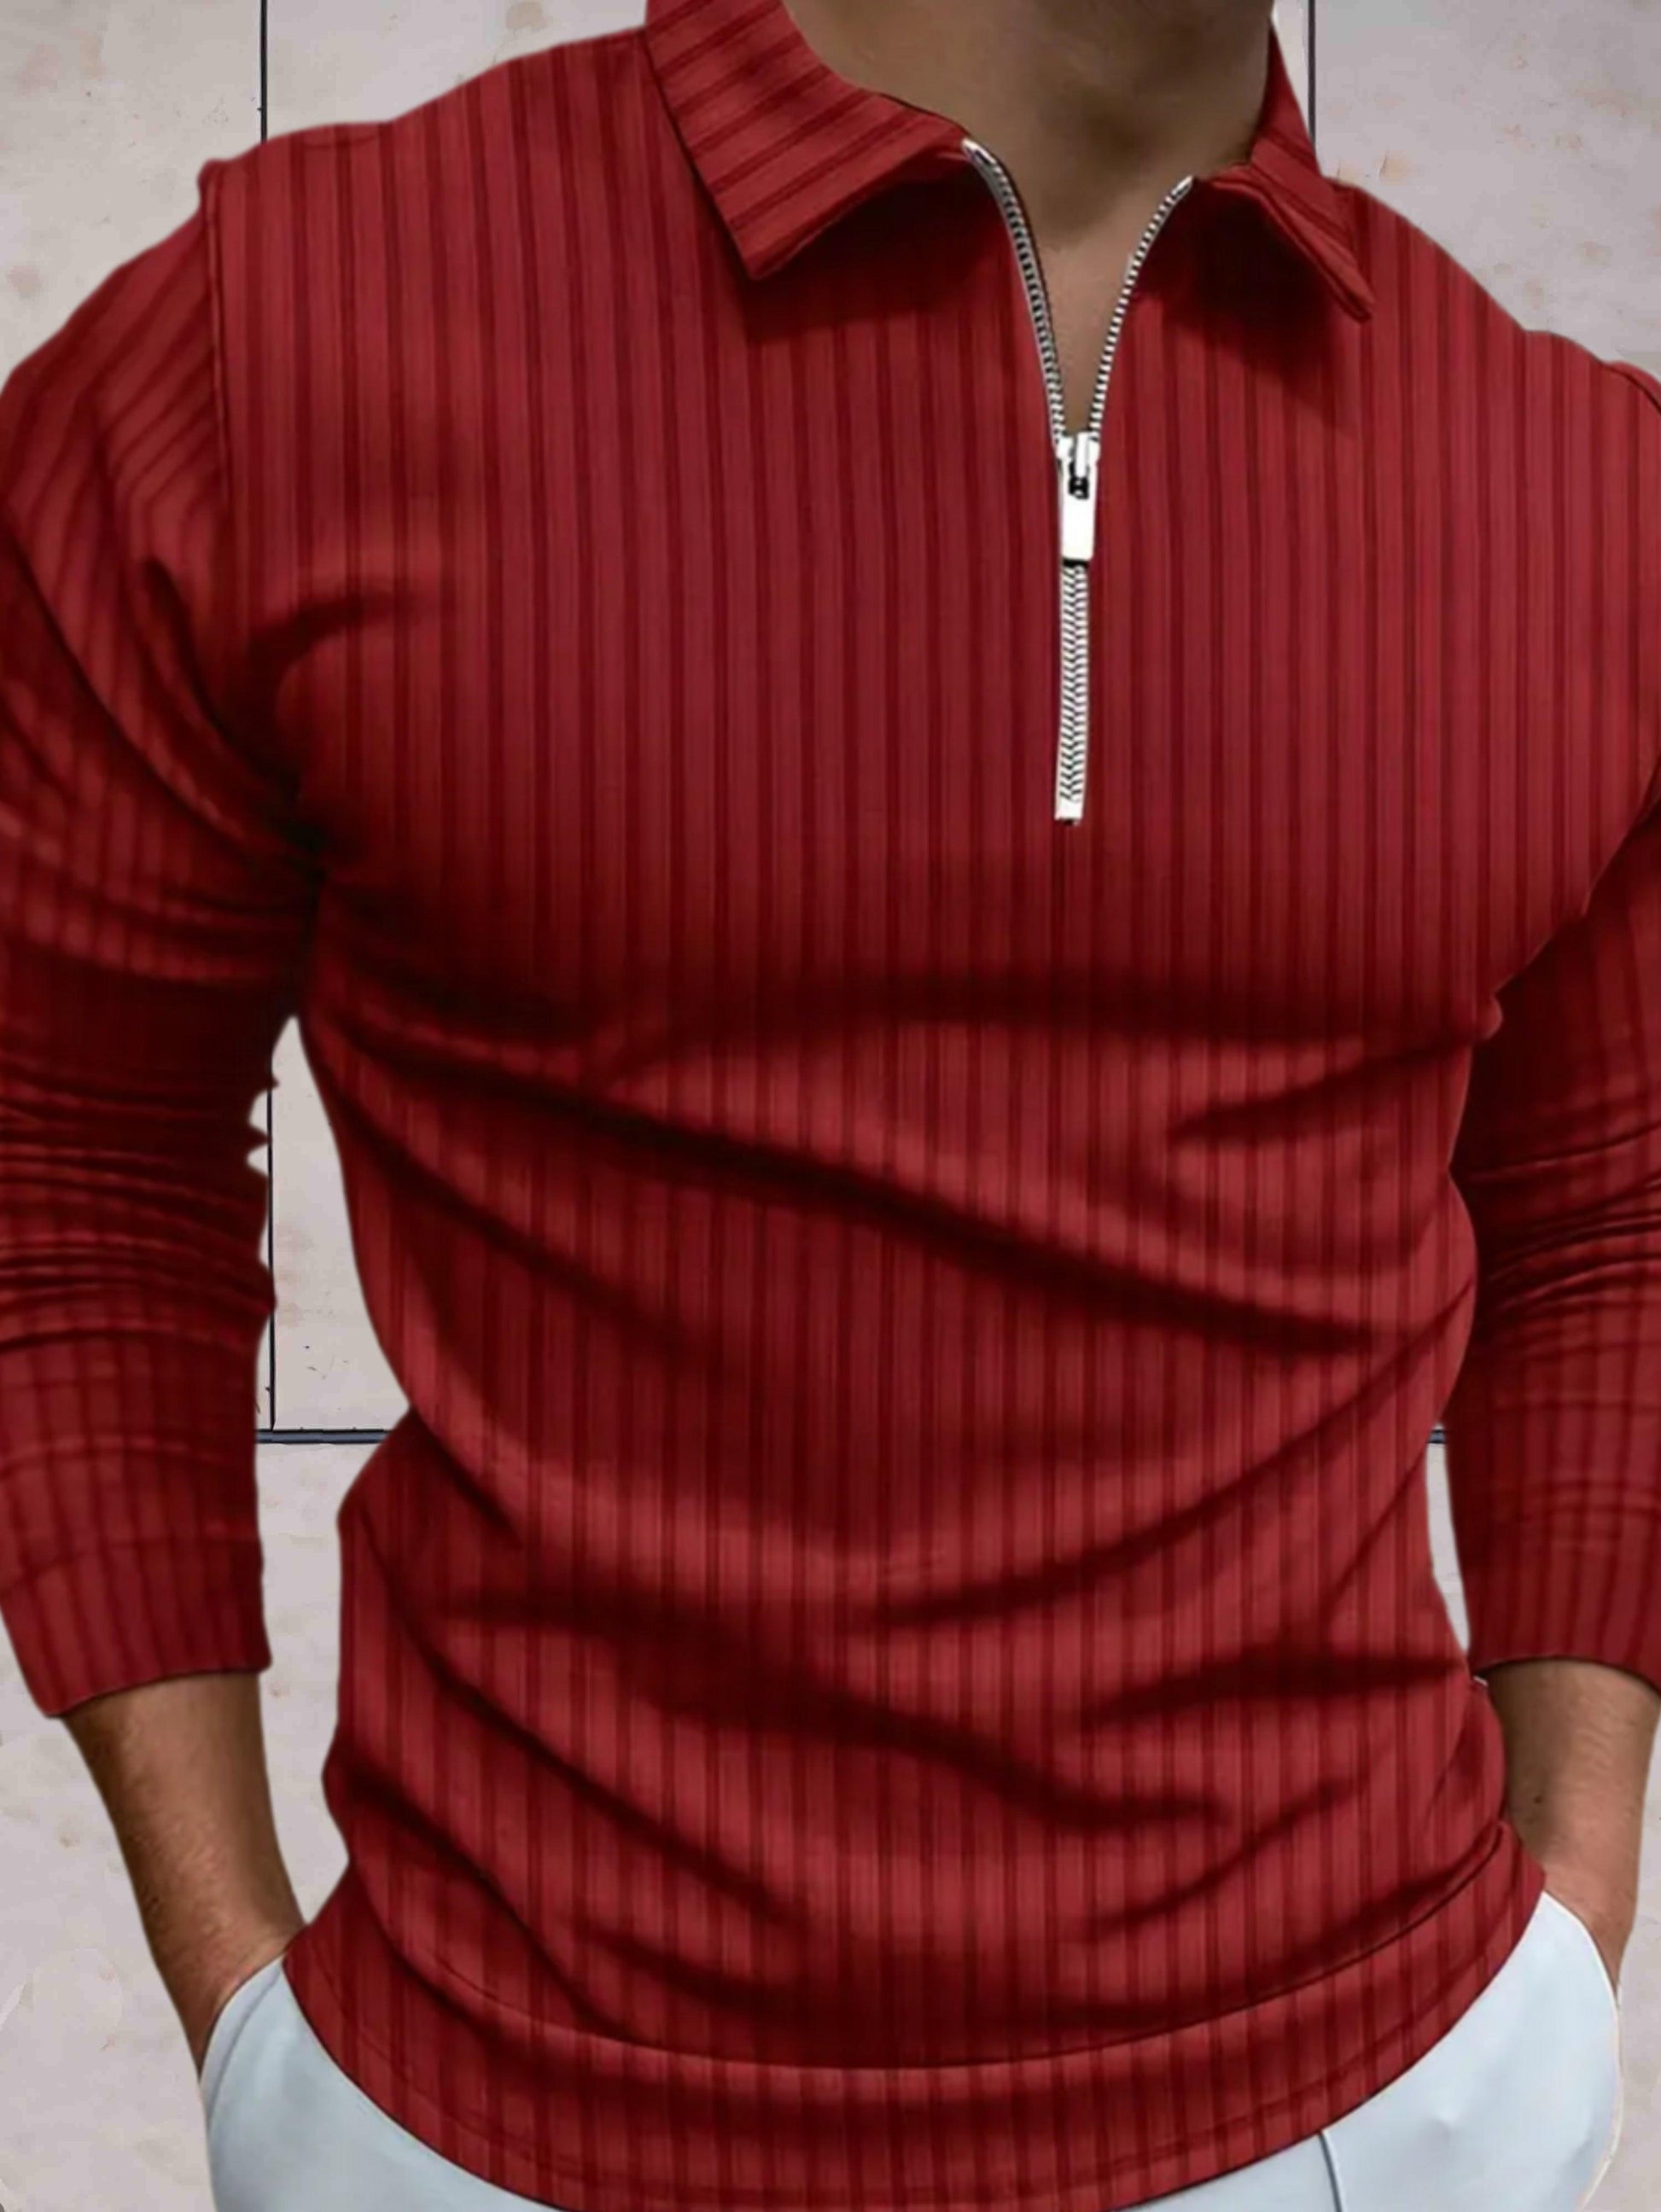 James - Winter warme sweater zipper kraag comfortabel in meerdere kleuren - Sky-Sense